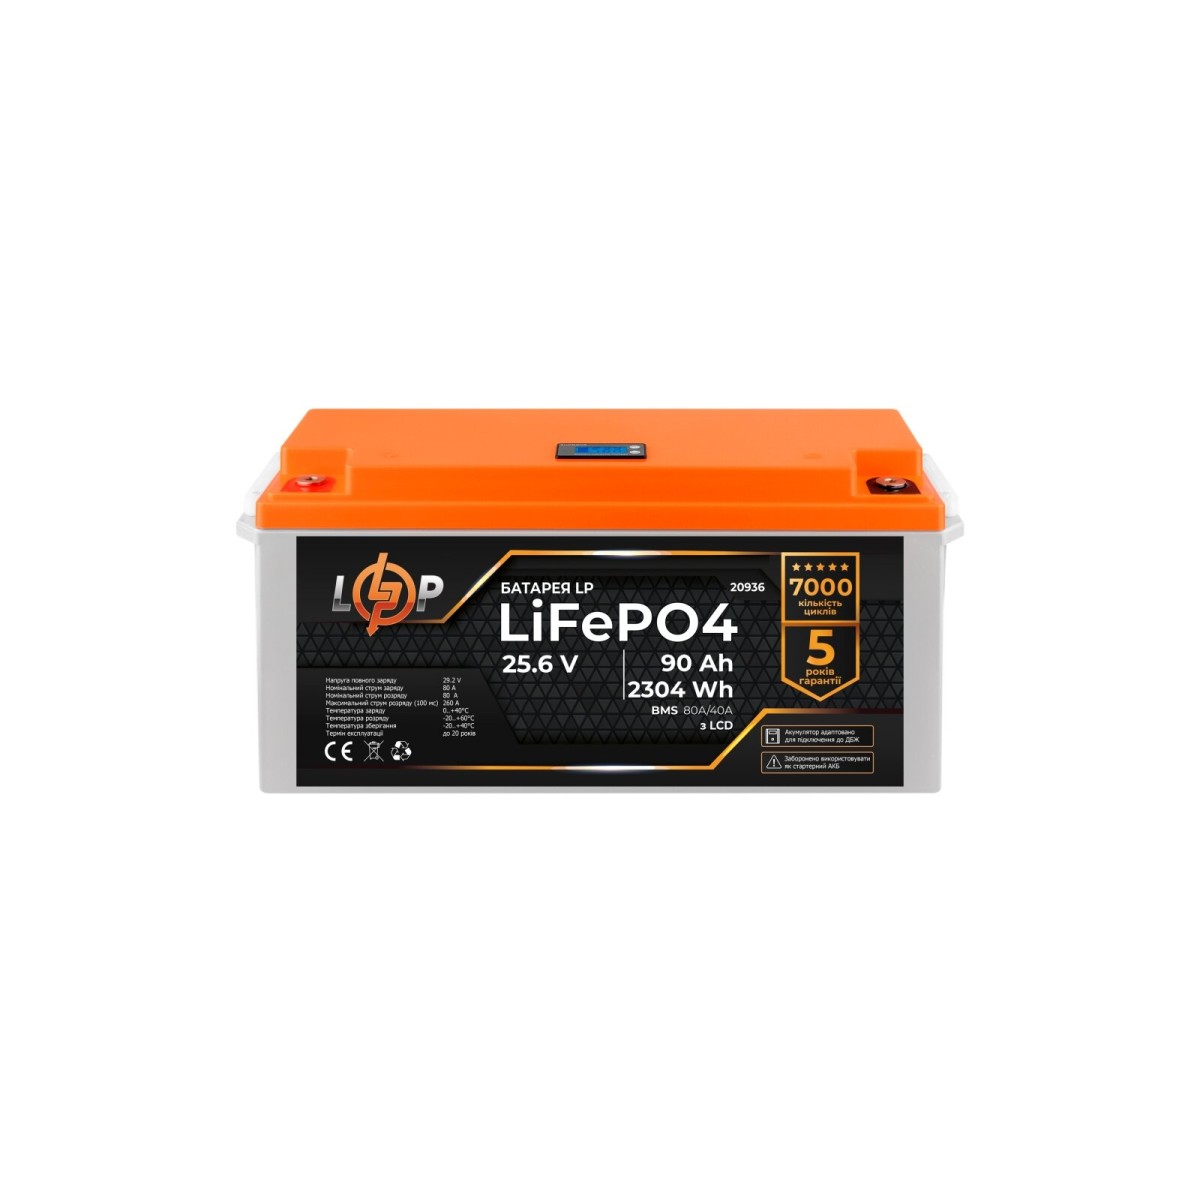 Акумулятор LP LiFePO4 для ДБЖ LCD 24V (25,6V) - 90 Ah (2304Wh) (BMS 80A/40A) пластик 256_256.jpg